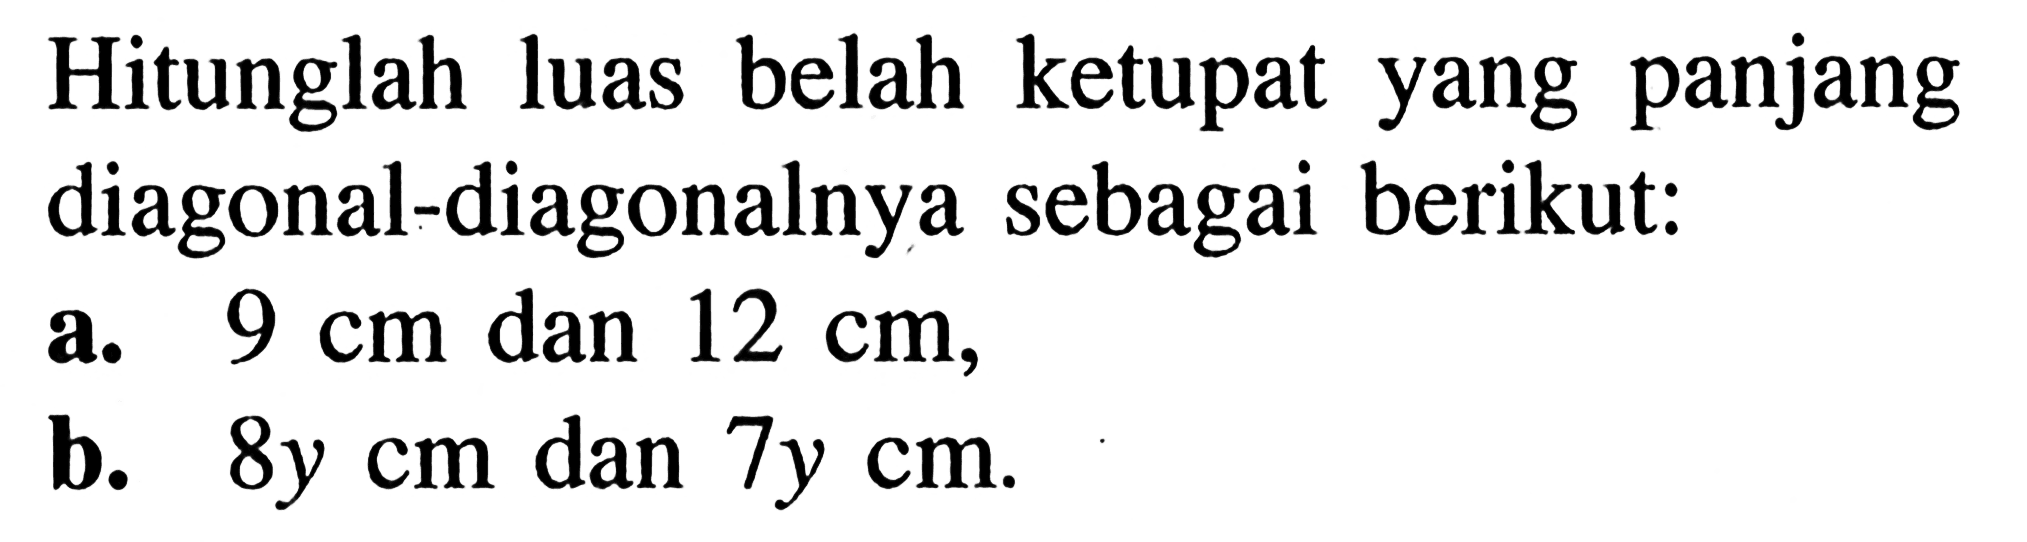 Hitunglah luas belah ketupat yang panjang diagonal-diagonalnya sebagai berikut:
a.  9 cm  dan  12 cm,
b.  8y cm  dan  7y cm .